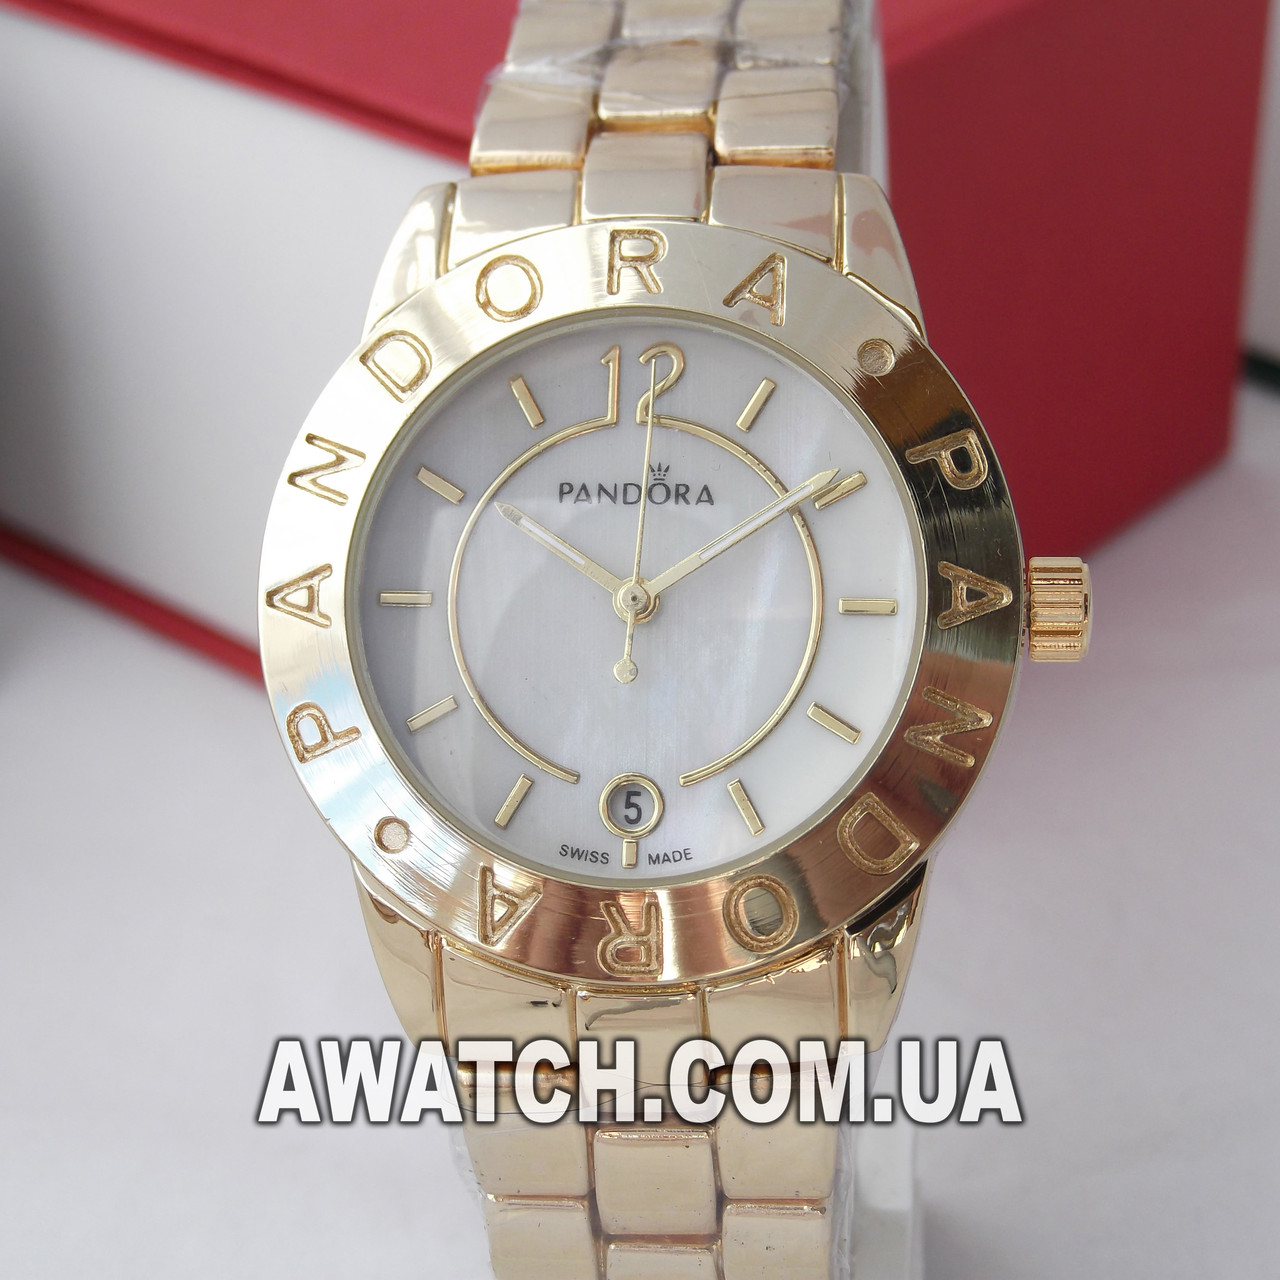 Жіночі кварцові наручні годинники Pandora M46 / Пандора на металевому браслеті золотистого кольору